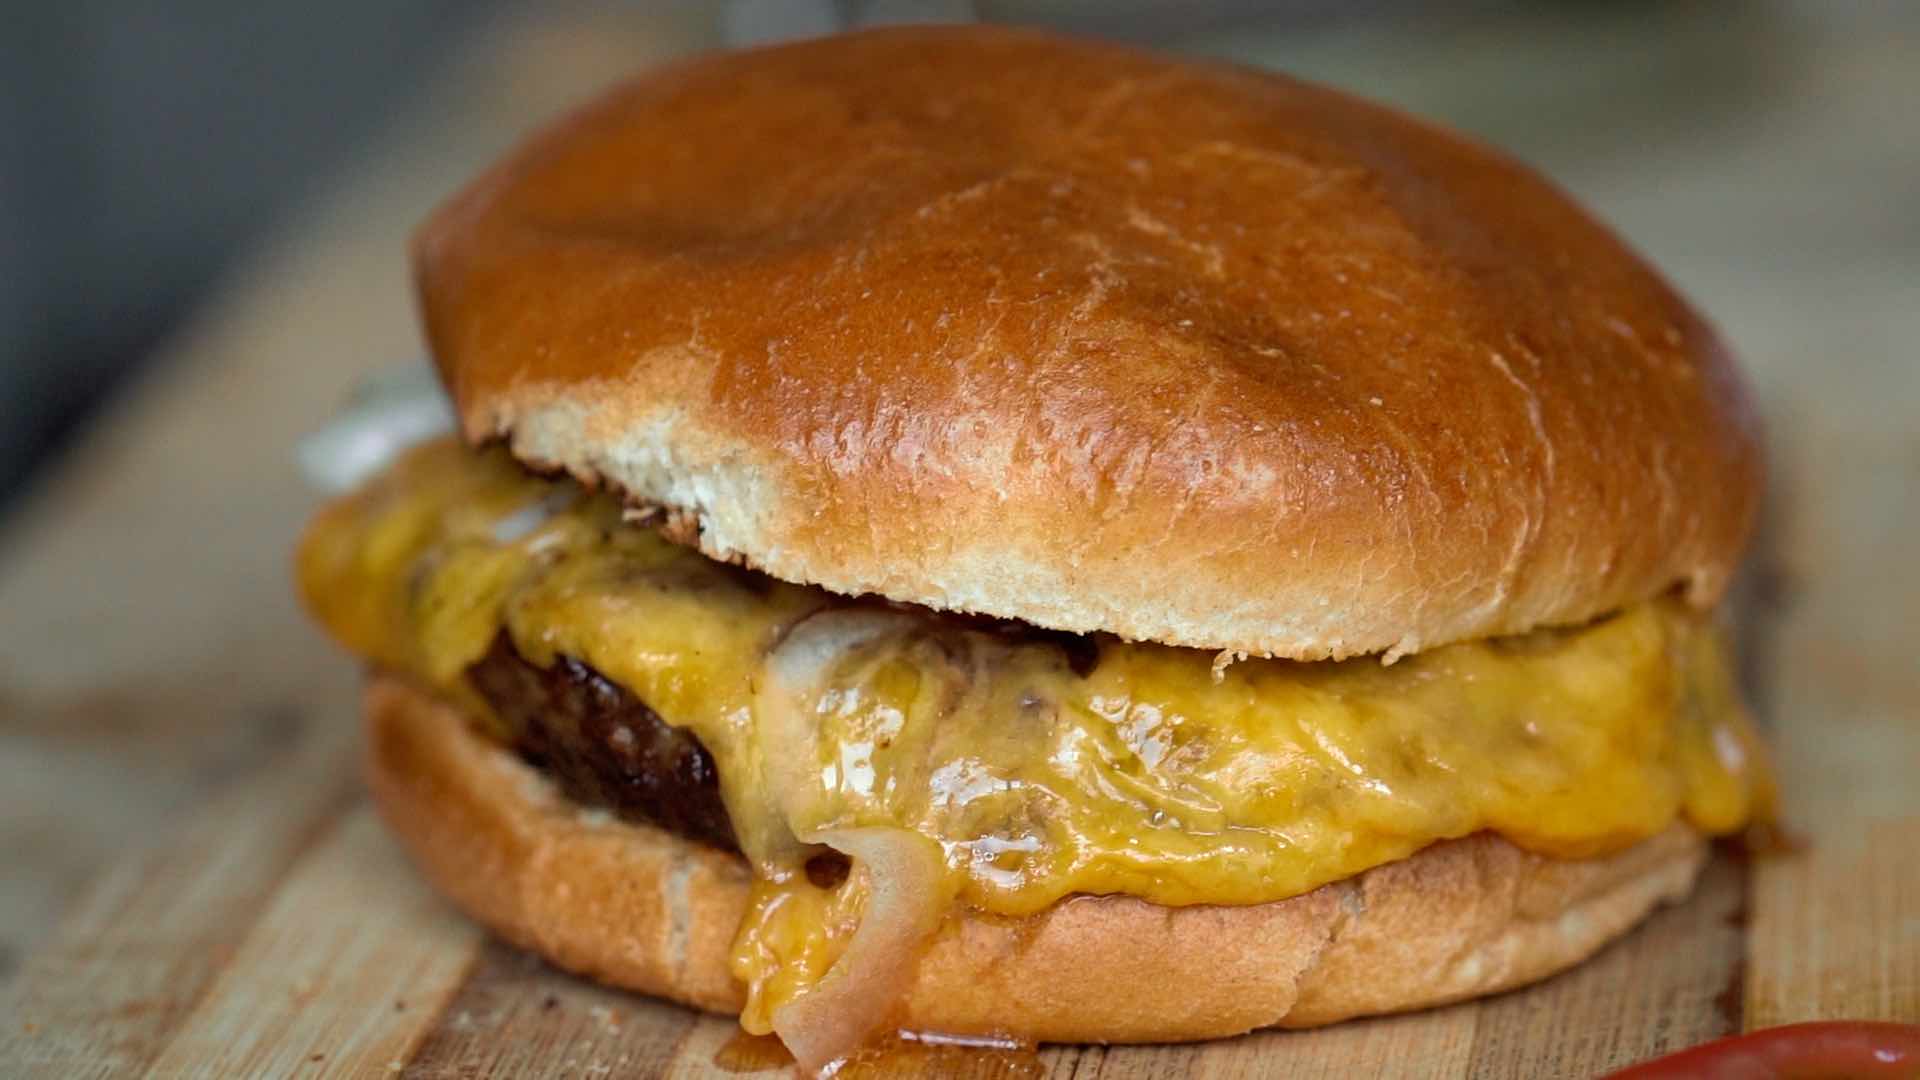 Rezept: Ein einfacher Cheeseburger - Meateor Helios